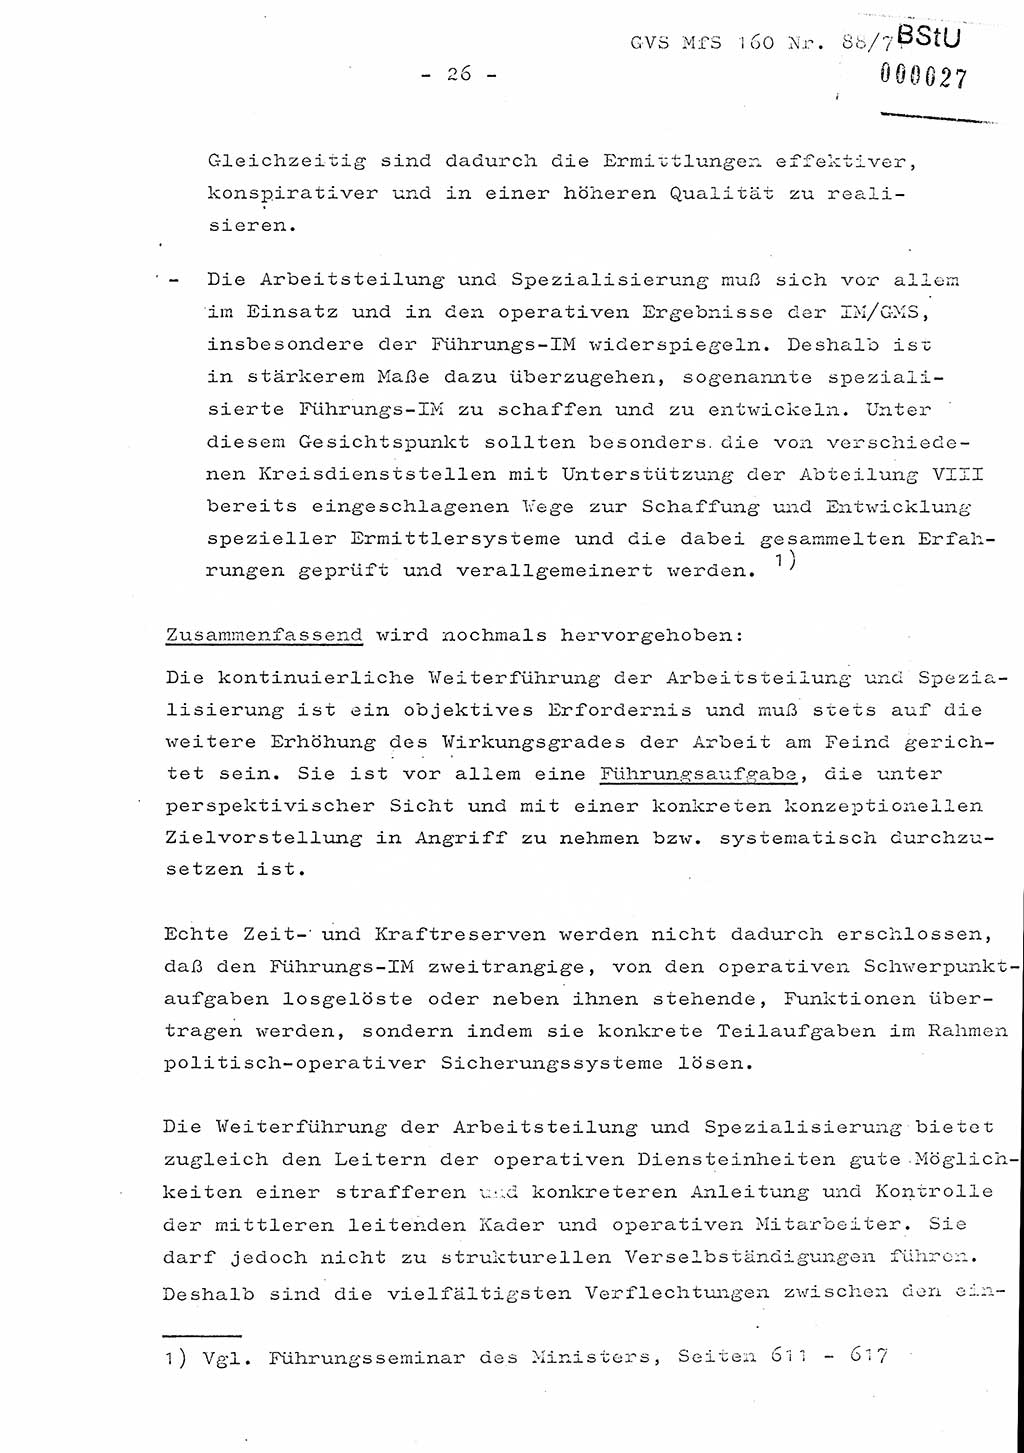 Dissertation Oberstleutnant Josef Schwarz (BV Schwerin), Major Fritz Amm (JHS), Hauptmann Peter Gräßler (JHS), Ministerium für Staatssicherheit (MfS) [Deutsche Demokratische Republik (DDR)], Juristische Hochschule (JHS), Geheime Verschlußsache (GVS) 160-88/71, Potsdam 1972, Seite 26 (Diss. MfS DDR JHS GVS 160-88/71 1972, S. 26)